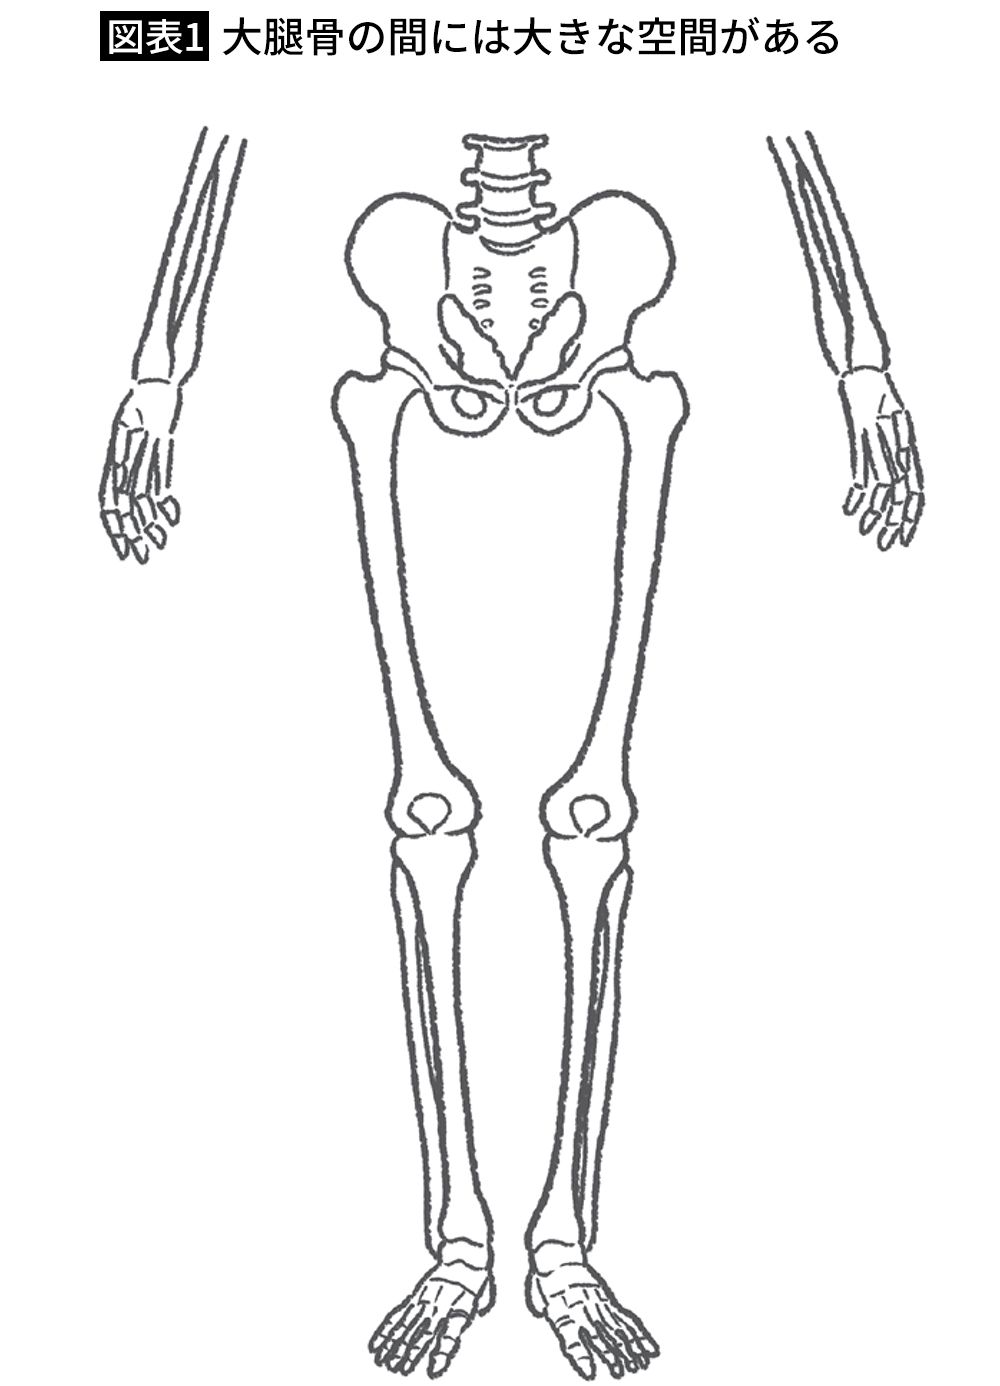 【図表1】大腿骨の間には大きな空間がある